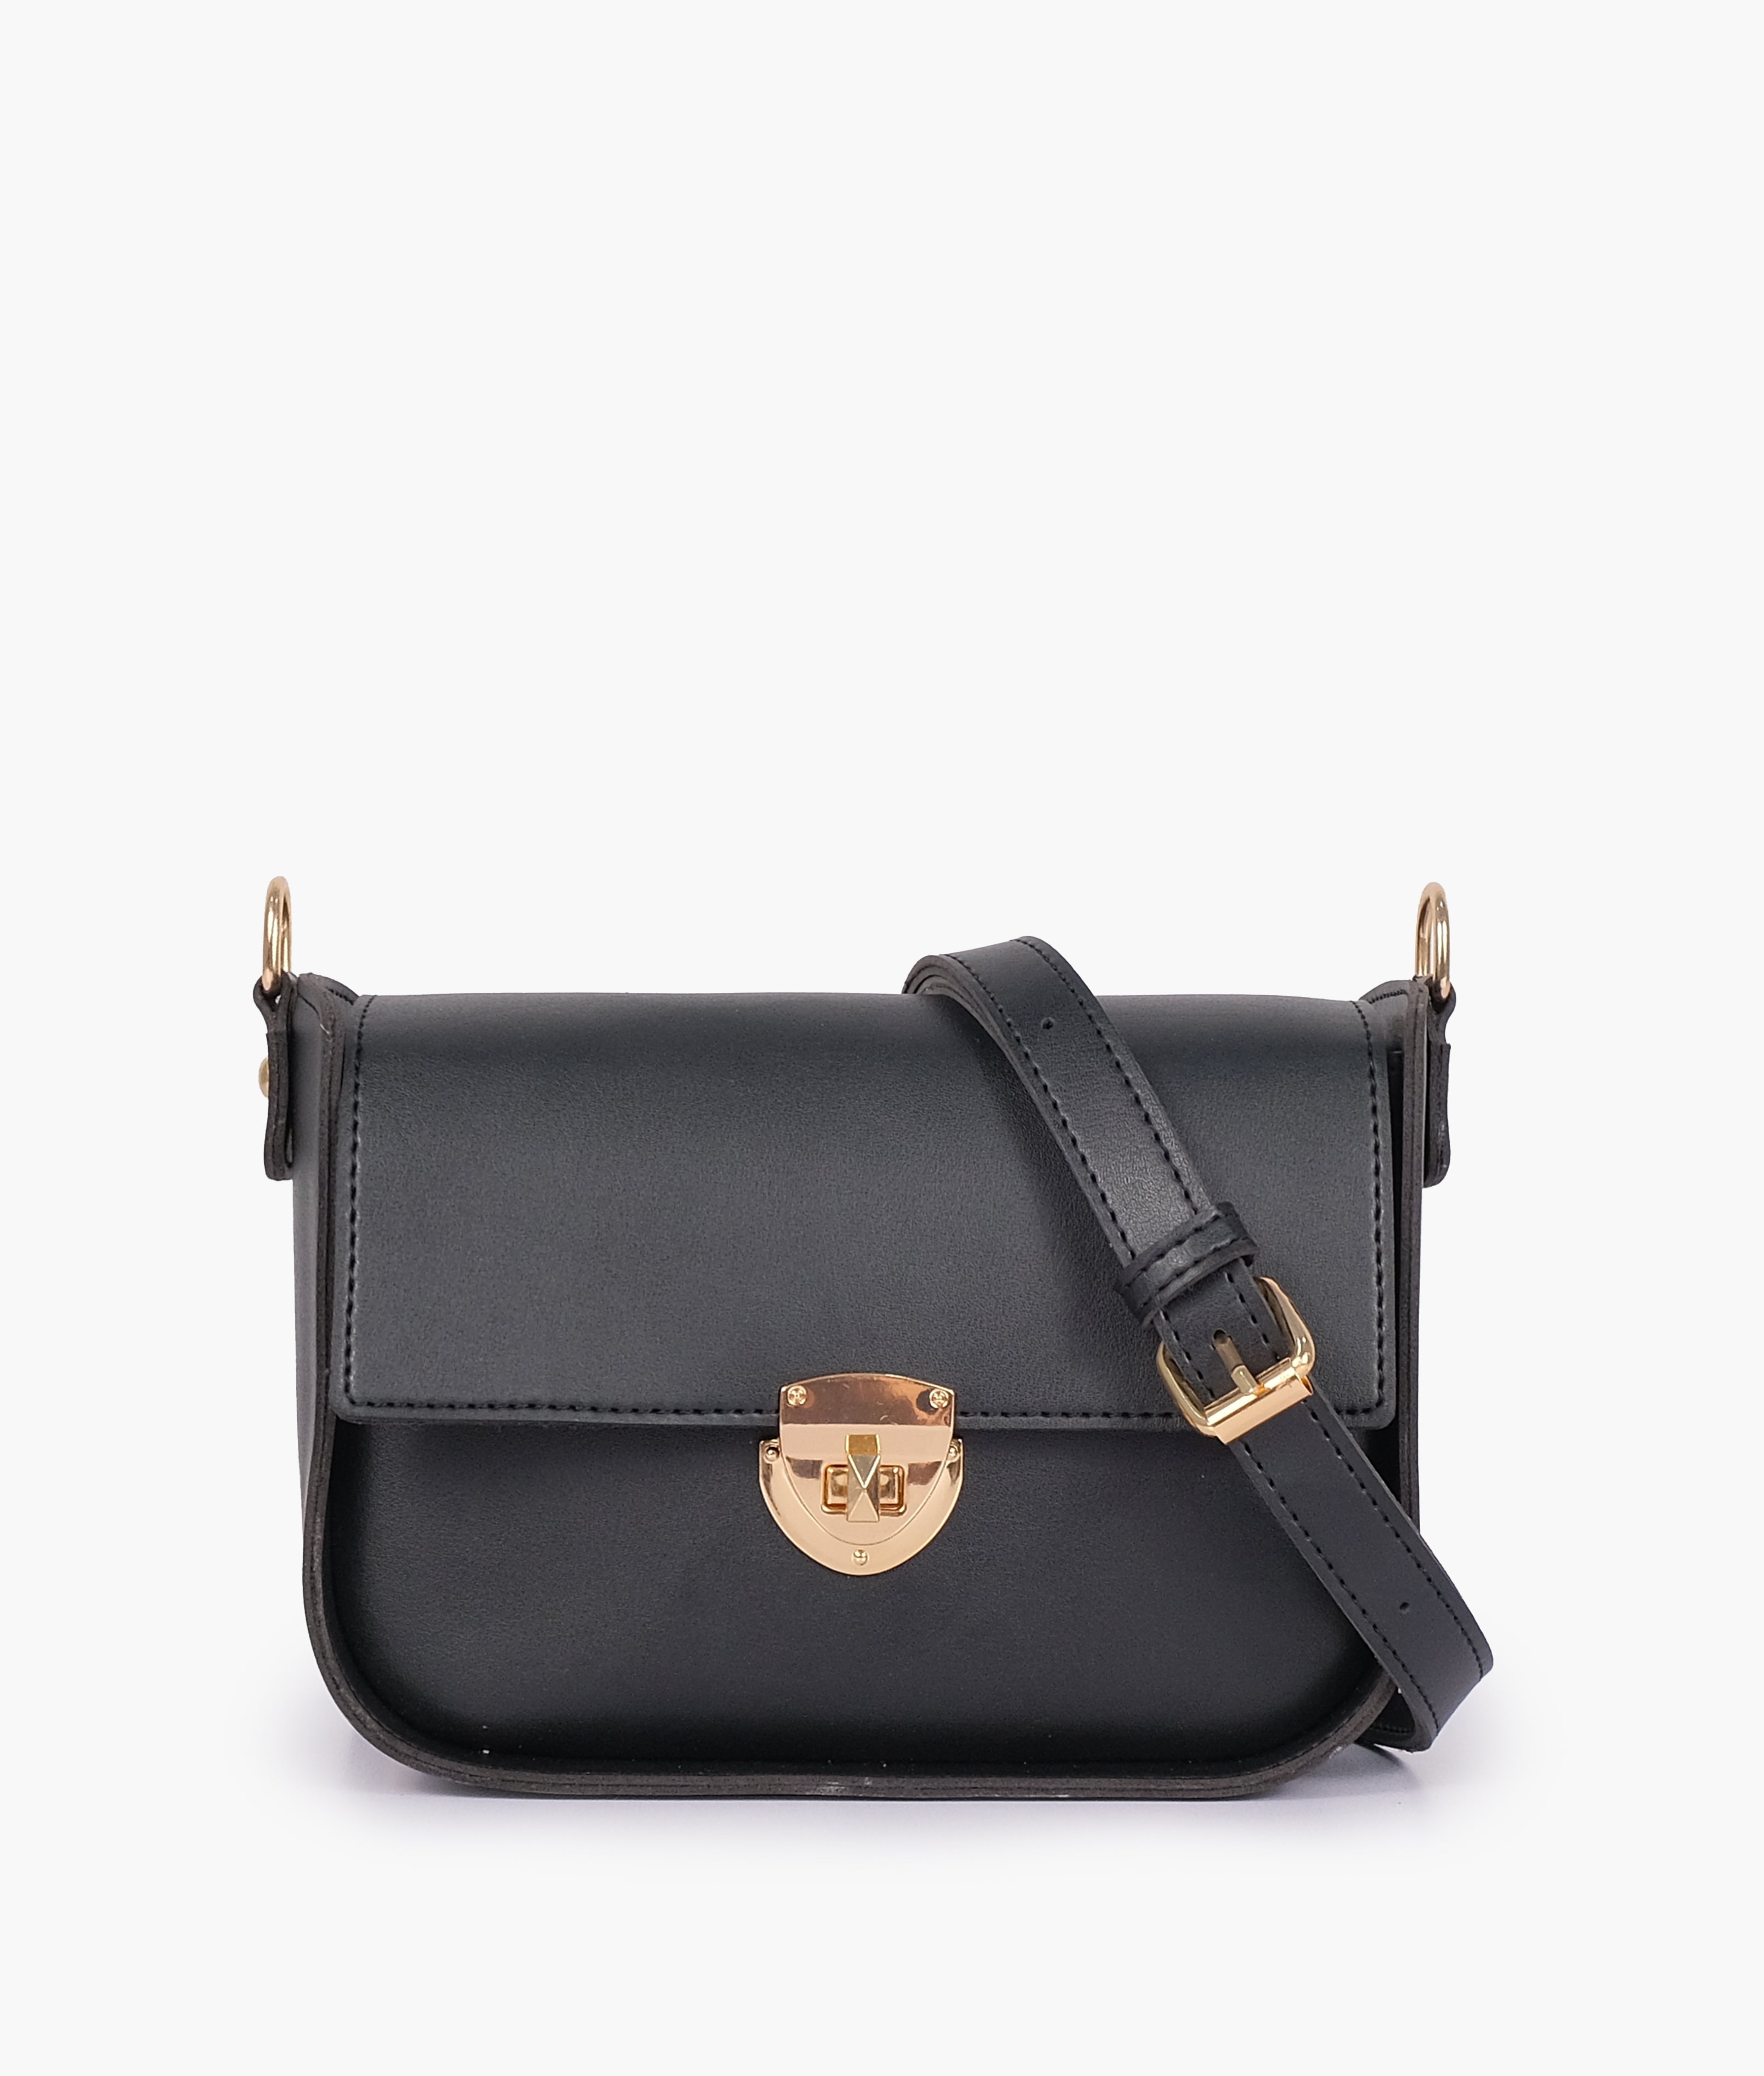 Black Handbag For Women 4191